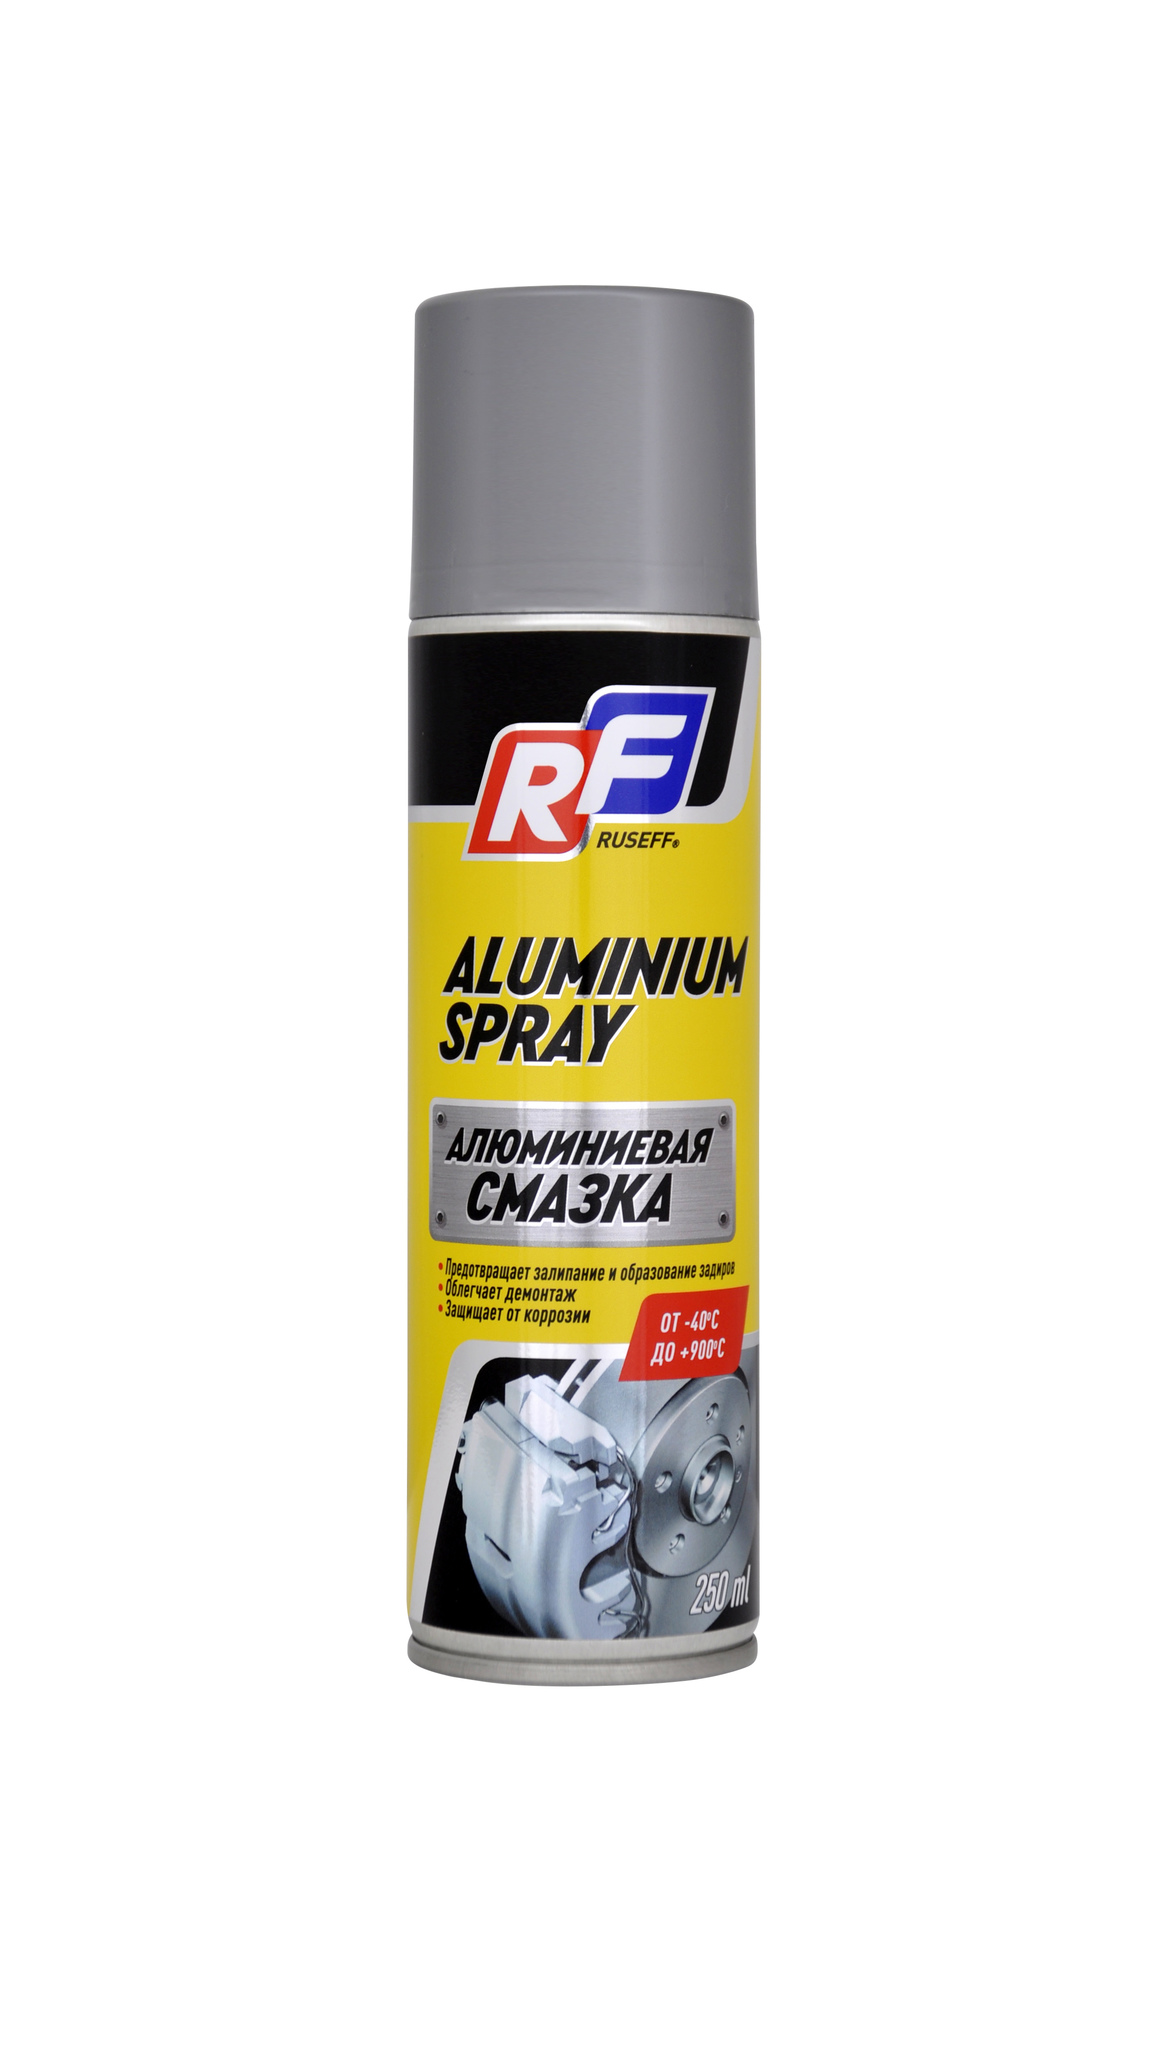 Ruseff Aluminium Spray Алюминиевая смазка